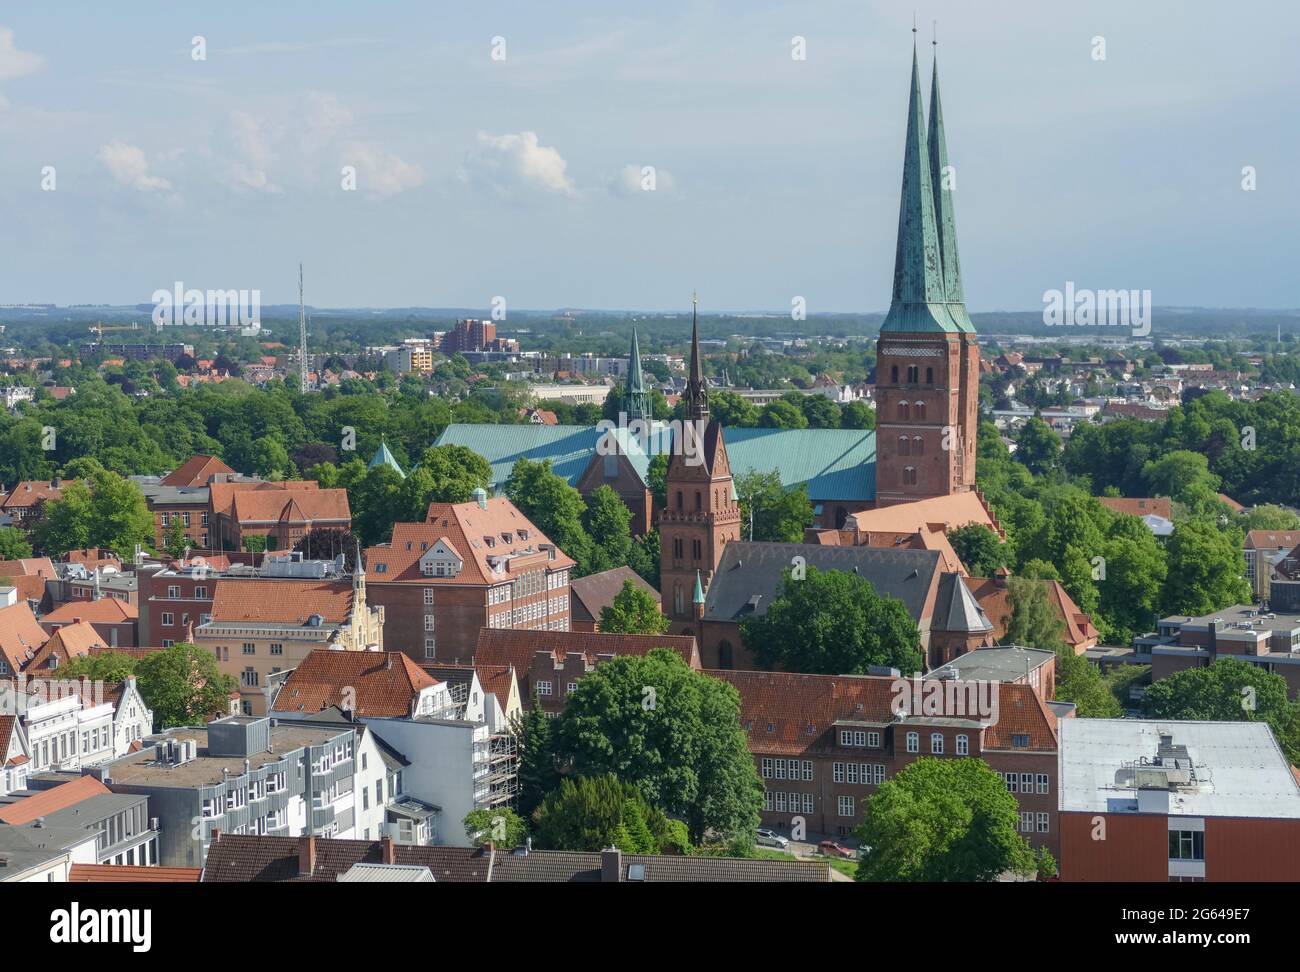 Vista aérea de la ciudad hanseática de Lübeck, una ciudad en el norte de Alemania Foto de stock